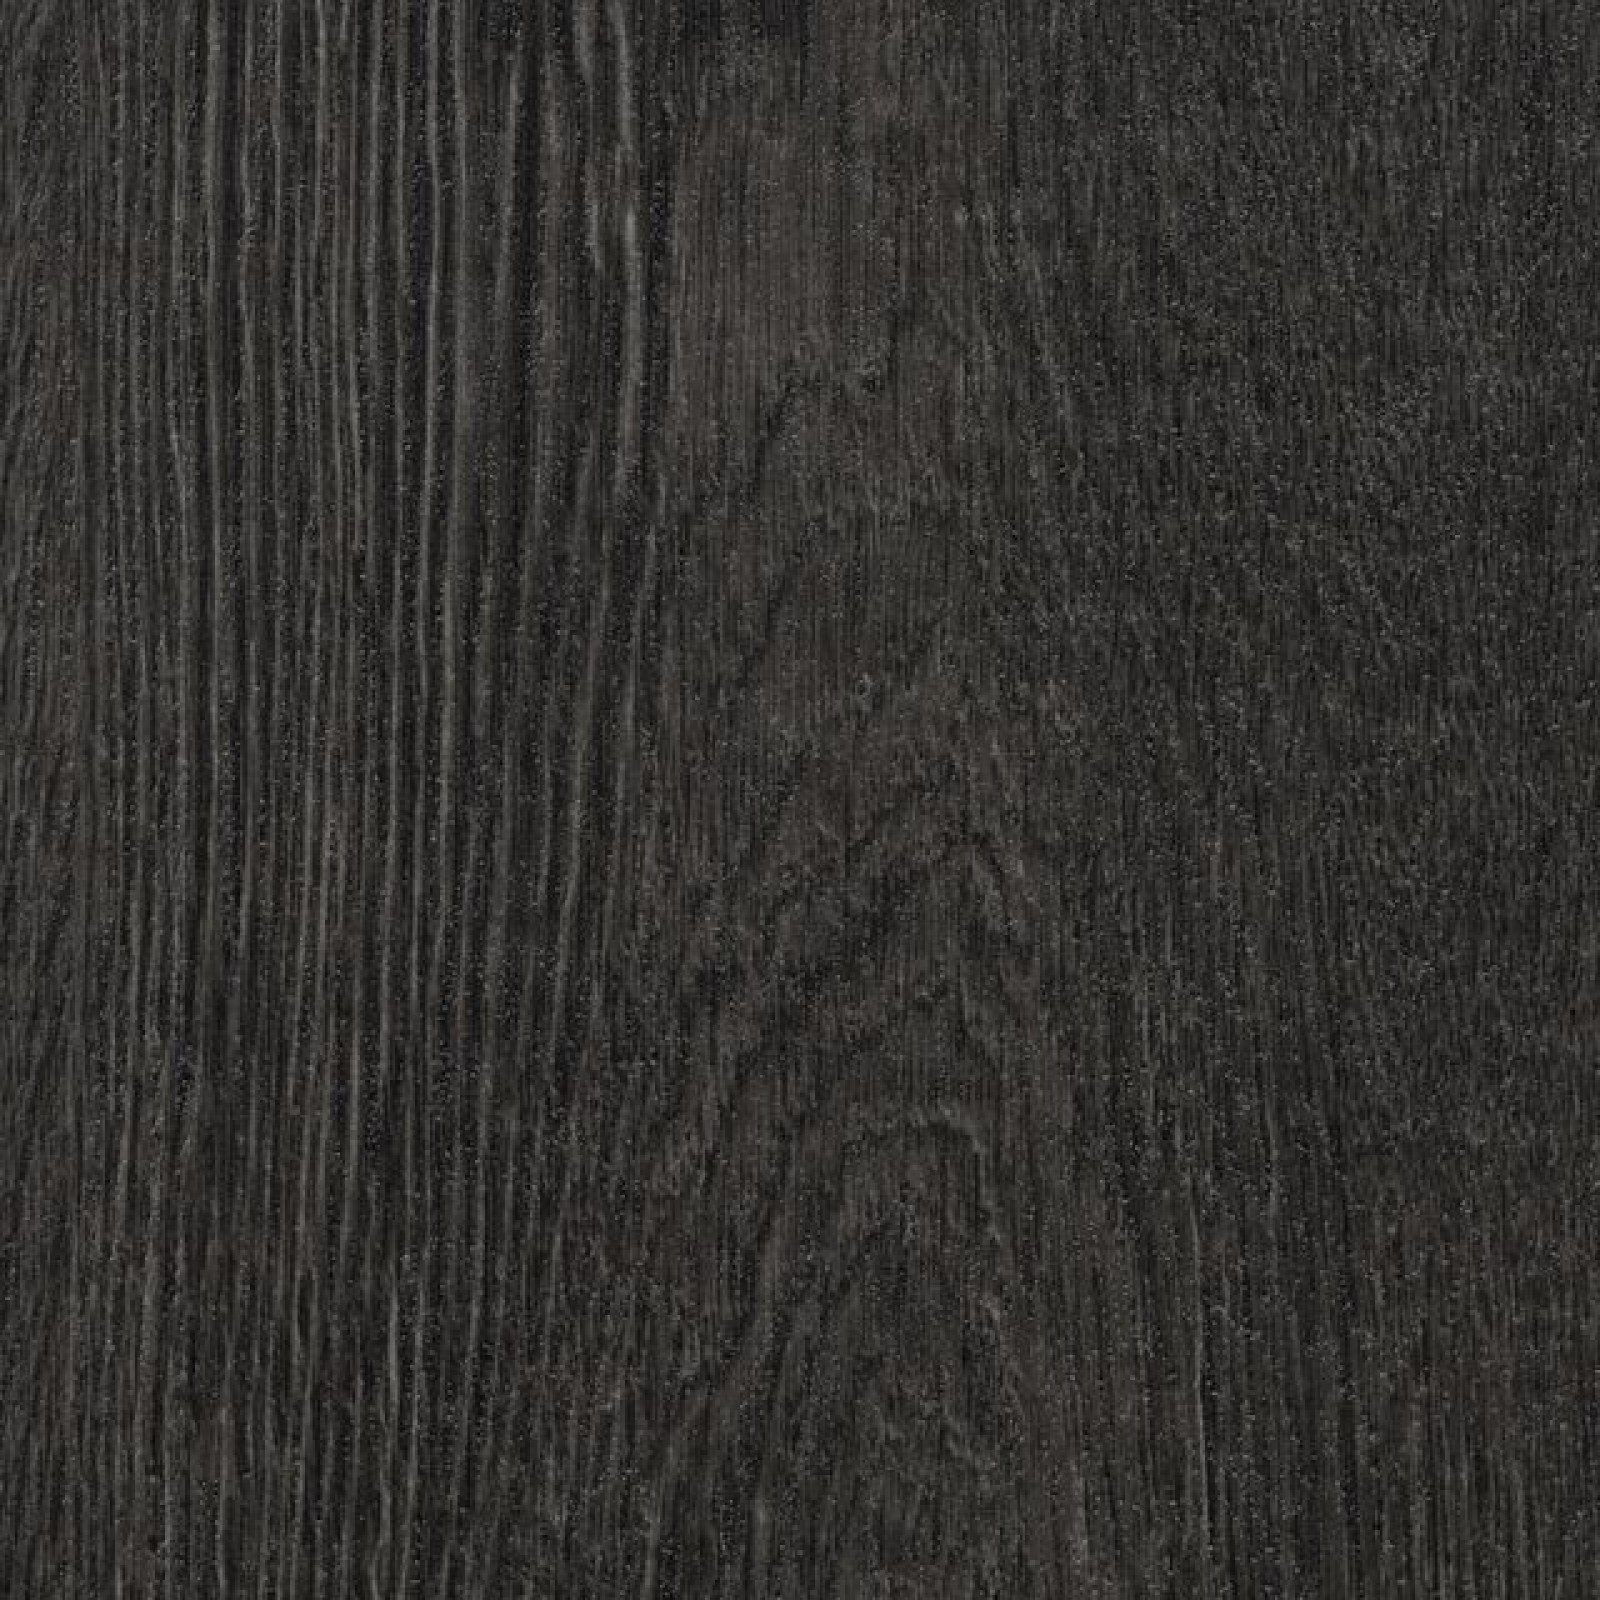 Vzor - 60074 black rustic oak